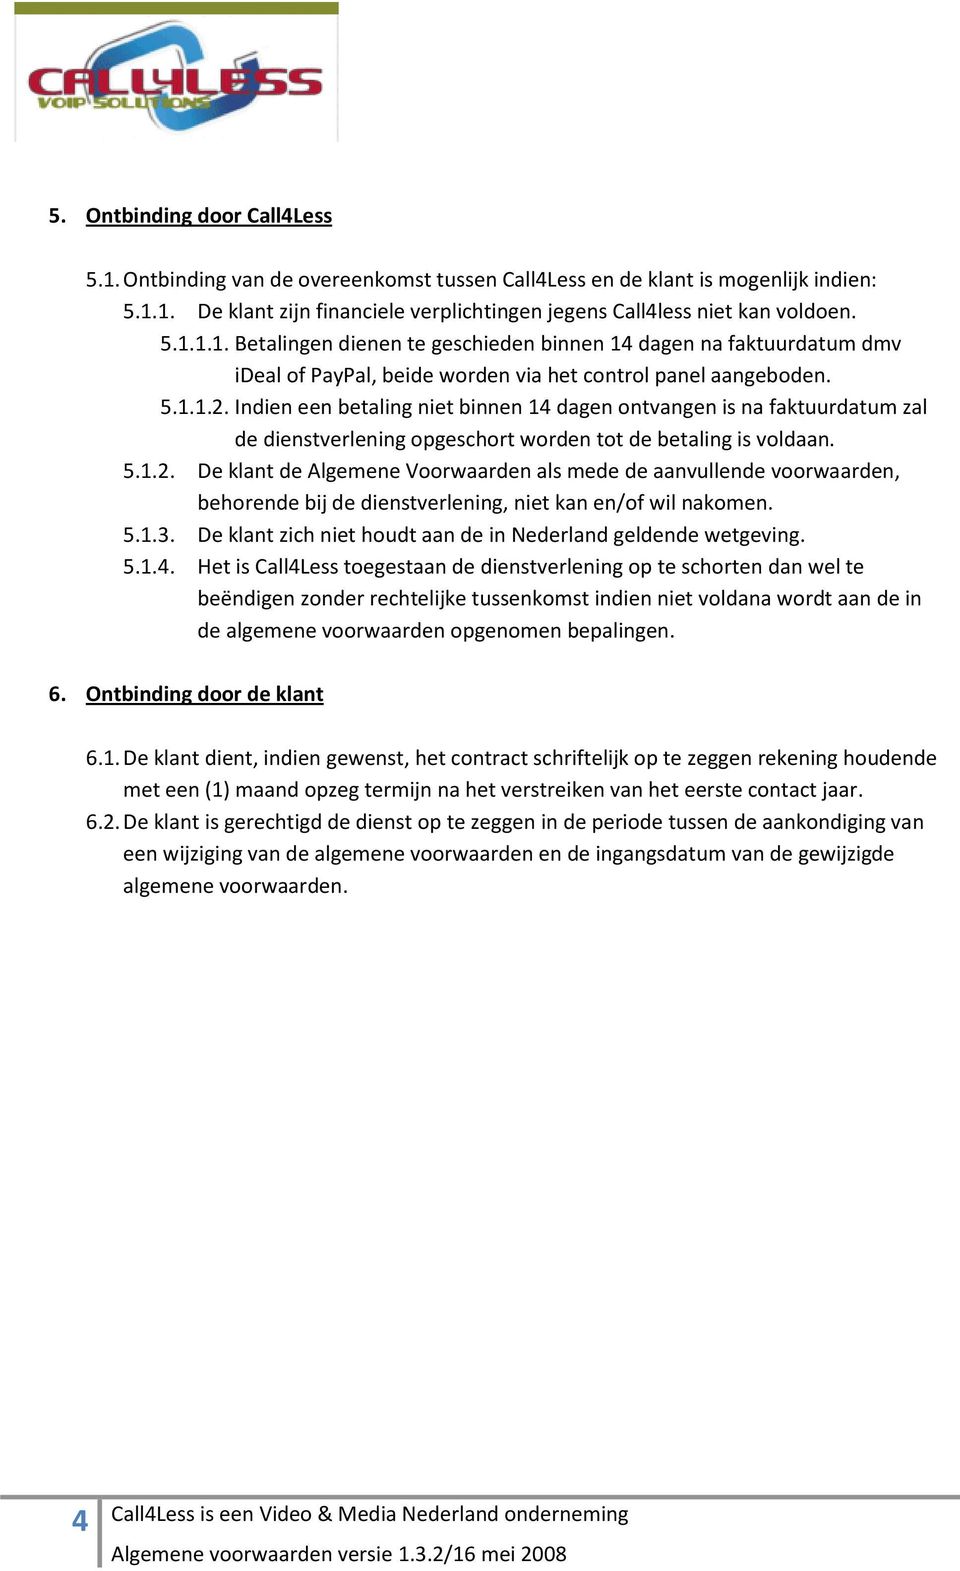 5.1.3. De klant zich niet houdt aan de in Nederland geldende wetgeving. 5.1.4.